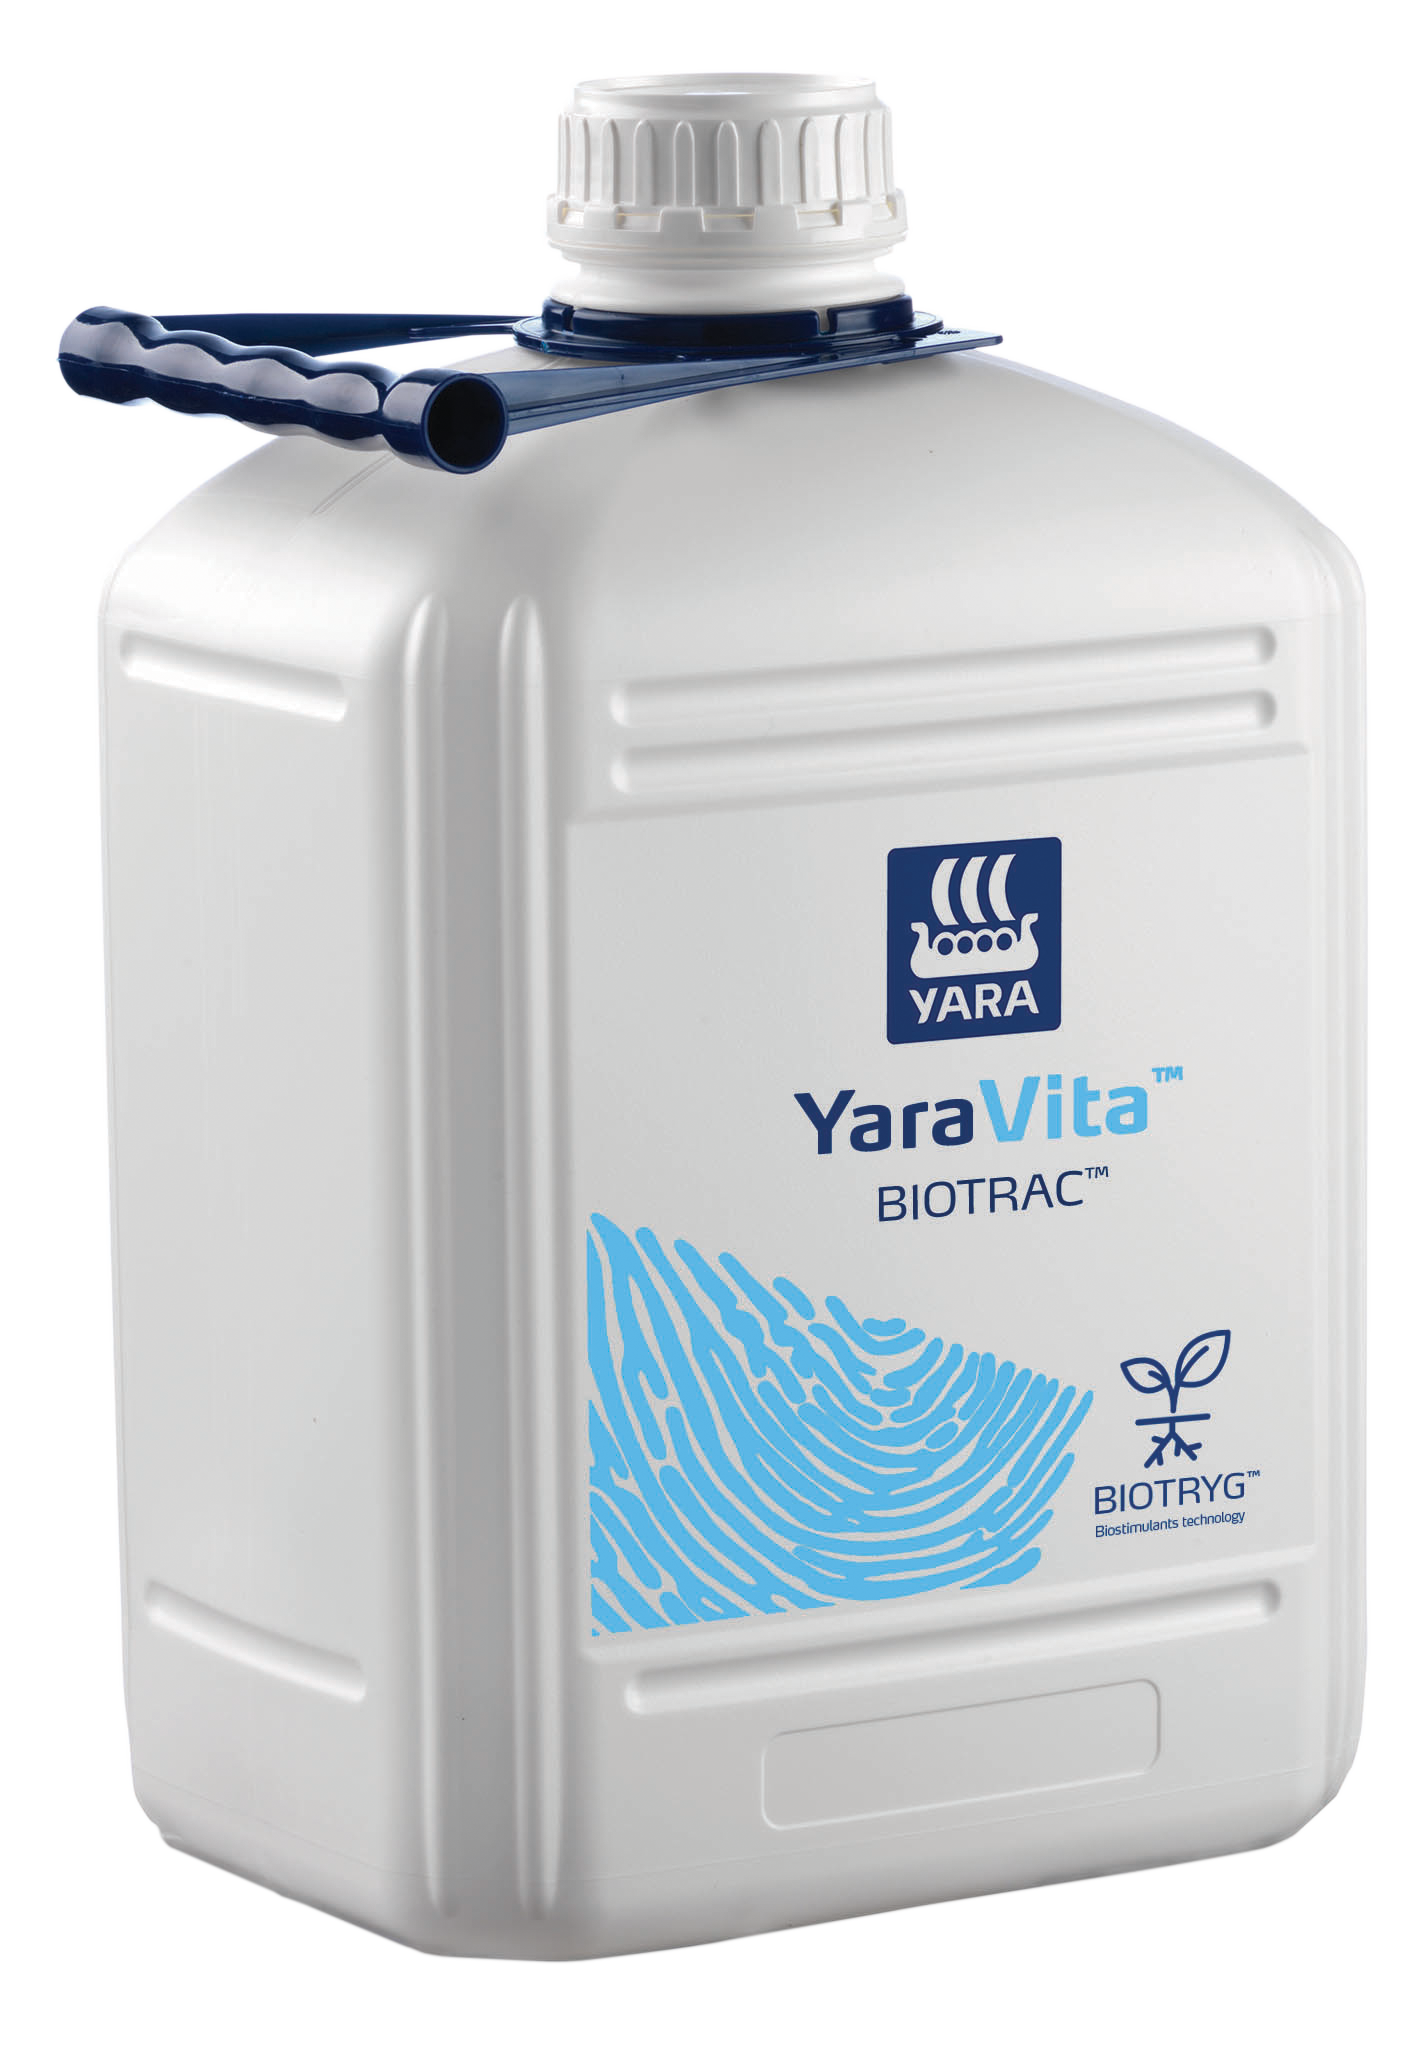 YaraVita Biotrac 300 L - 380 L